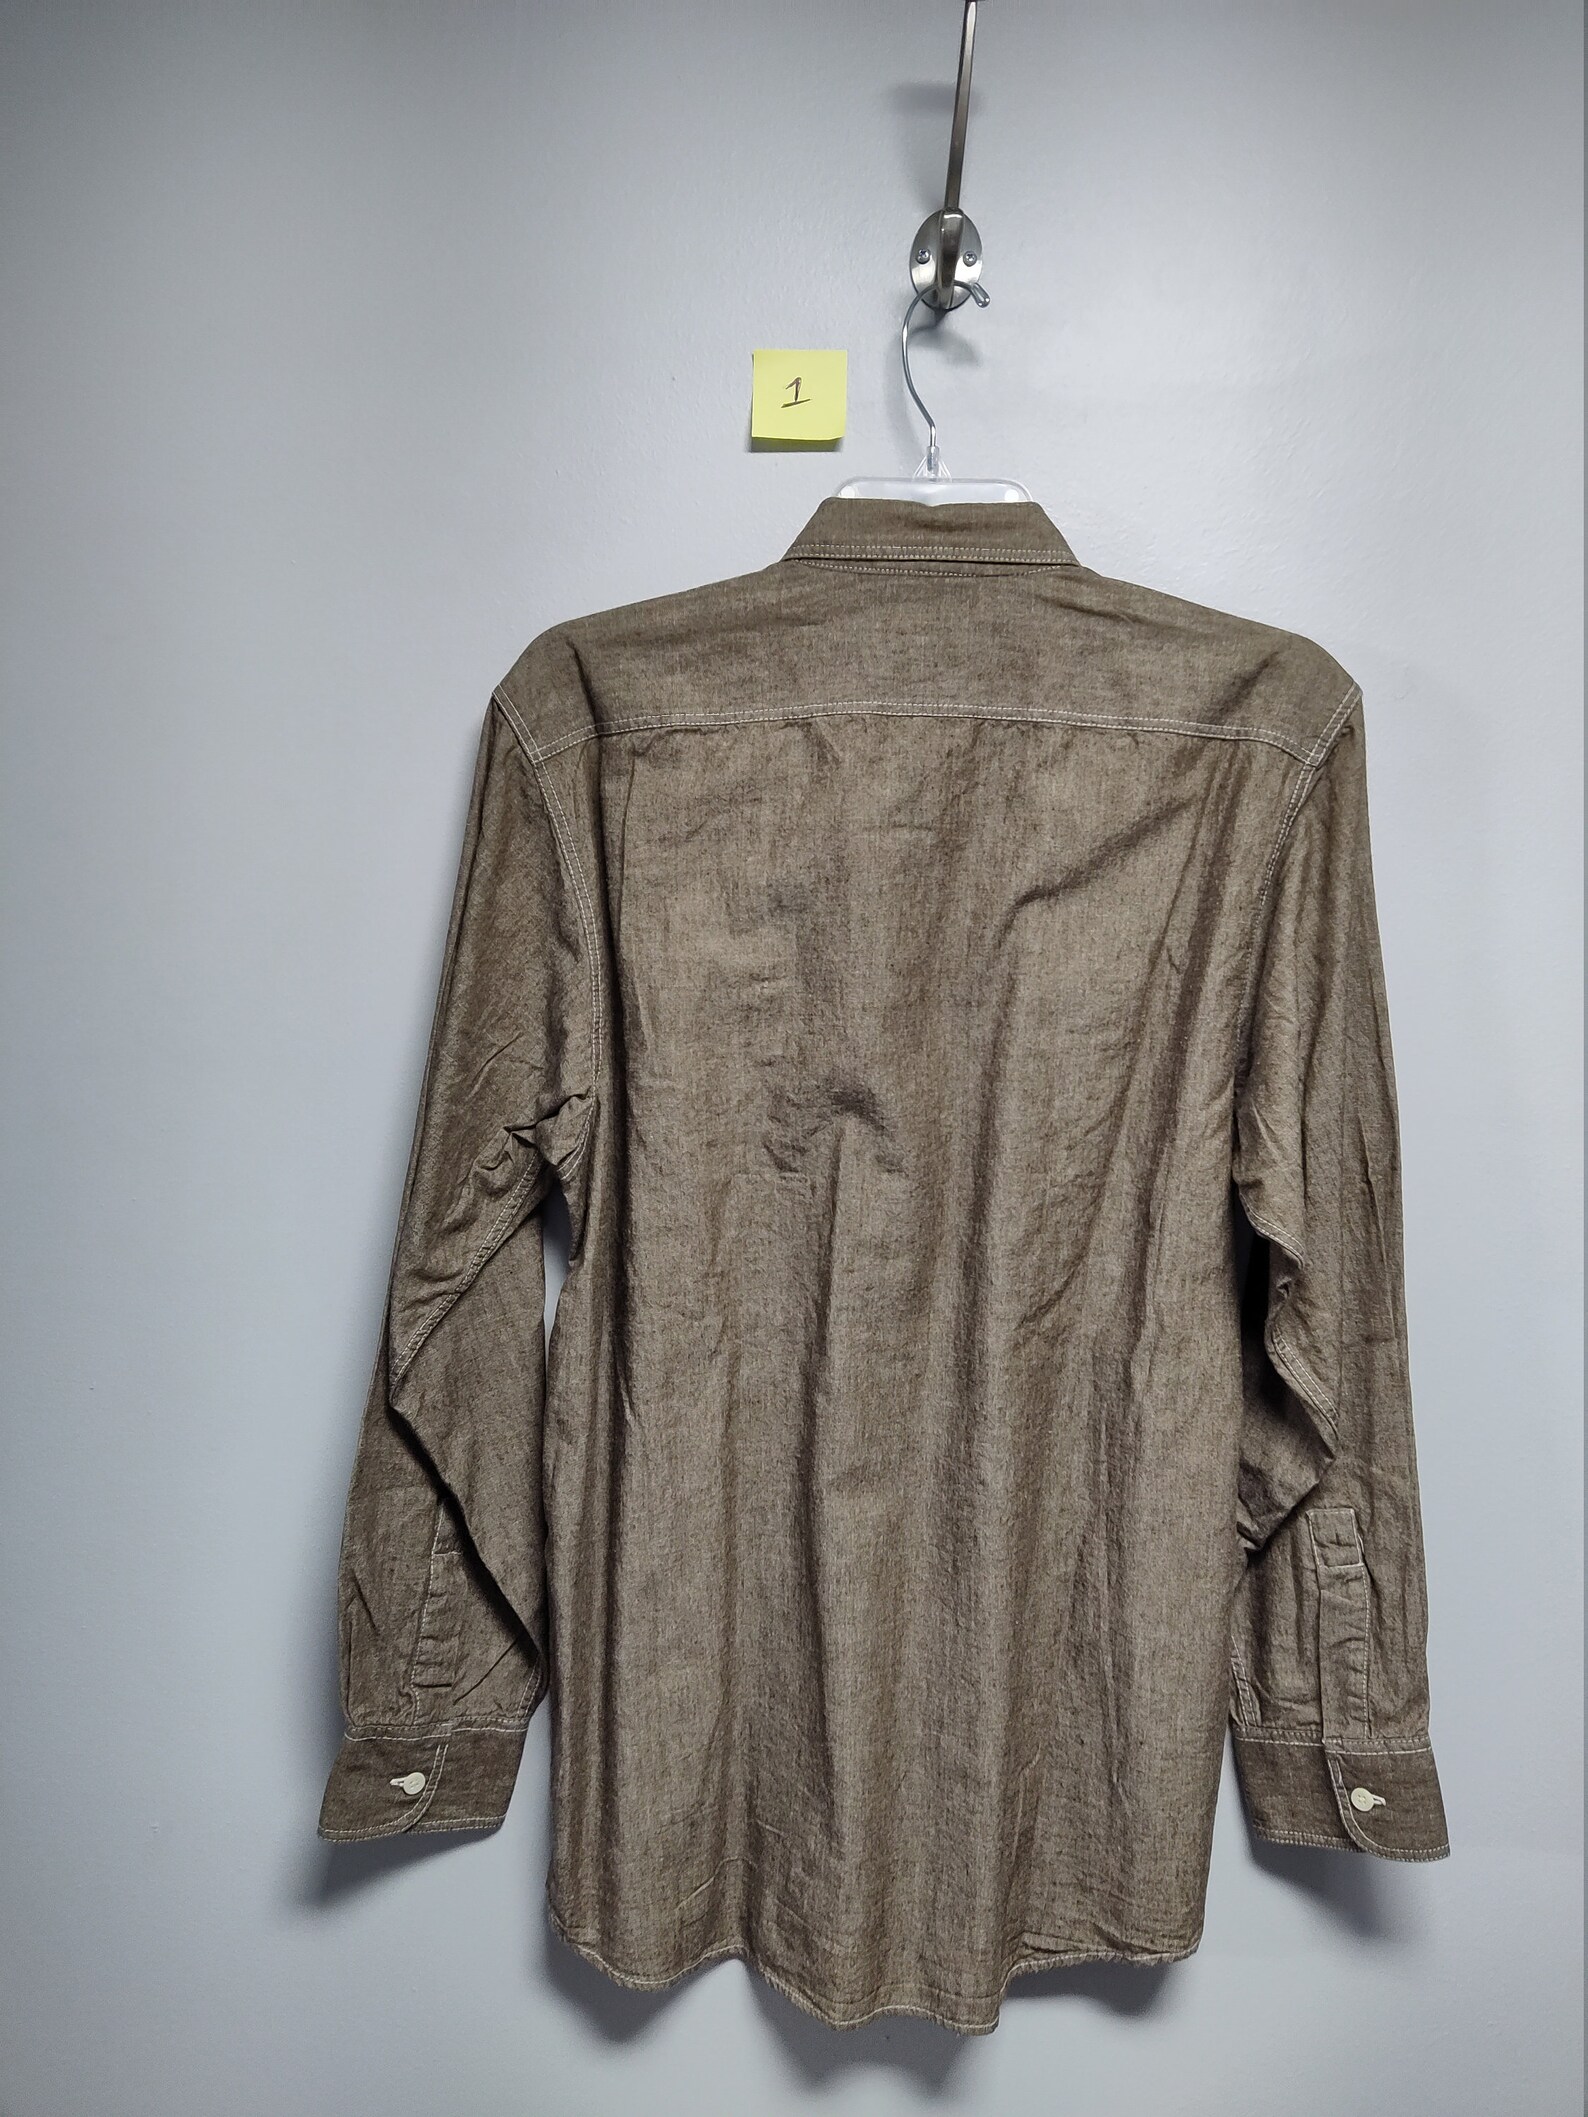 Vintage Mens Long Sleeve shirt by ACA JOE Prewashed look 100% | Etsy